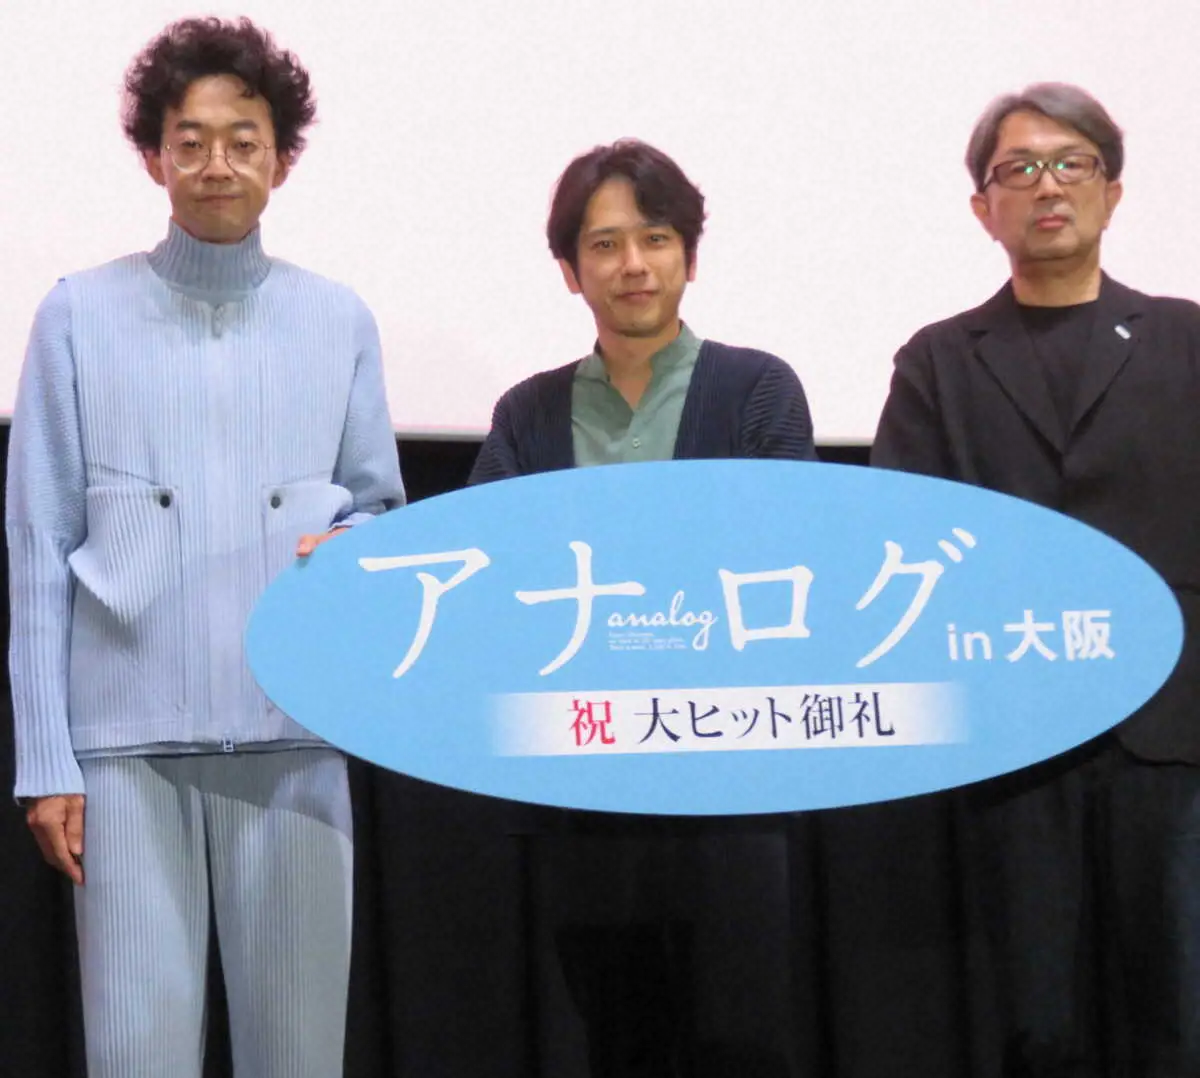 映画「アナログ」の舞台挨拶を大阪で行った（左）から今井隆文、二宮和也、タカハタ秀太監督　　　　　　　　　　　　　　　　　　　　　　　　　　　　　　